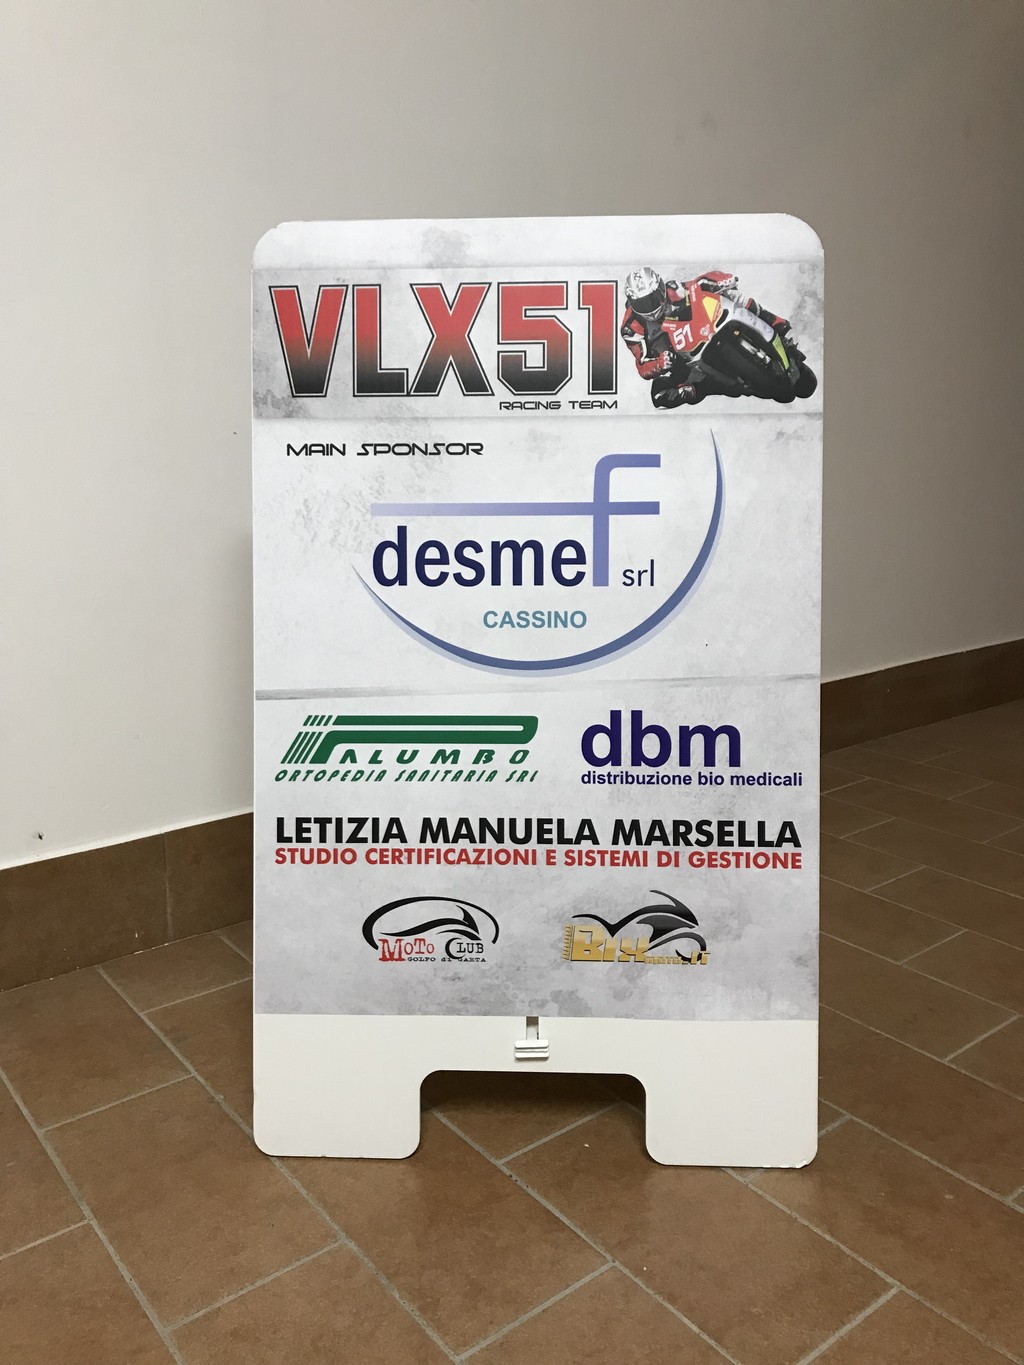 vlx51_Giuseppe_Marsella_Coppa_Italia_moto29